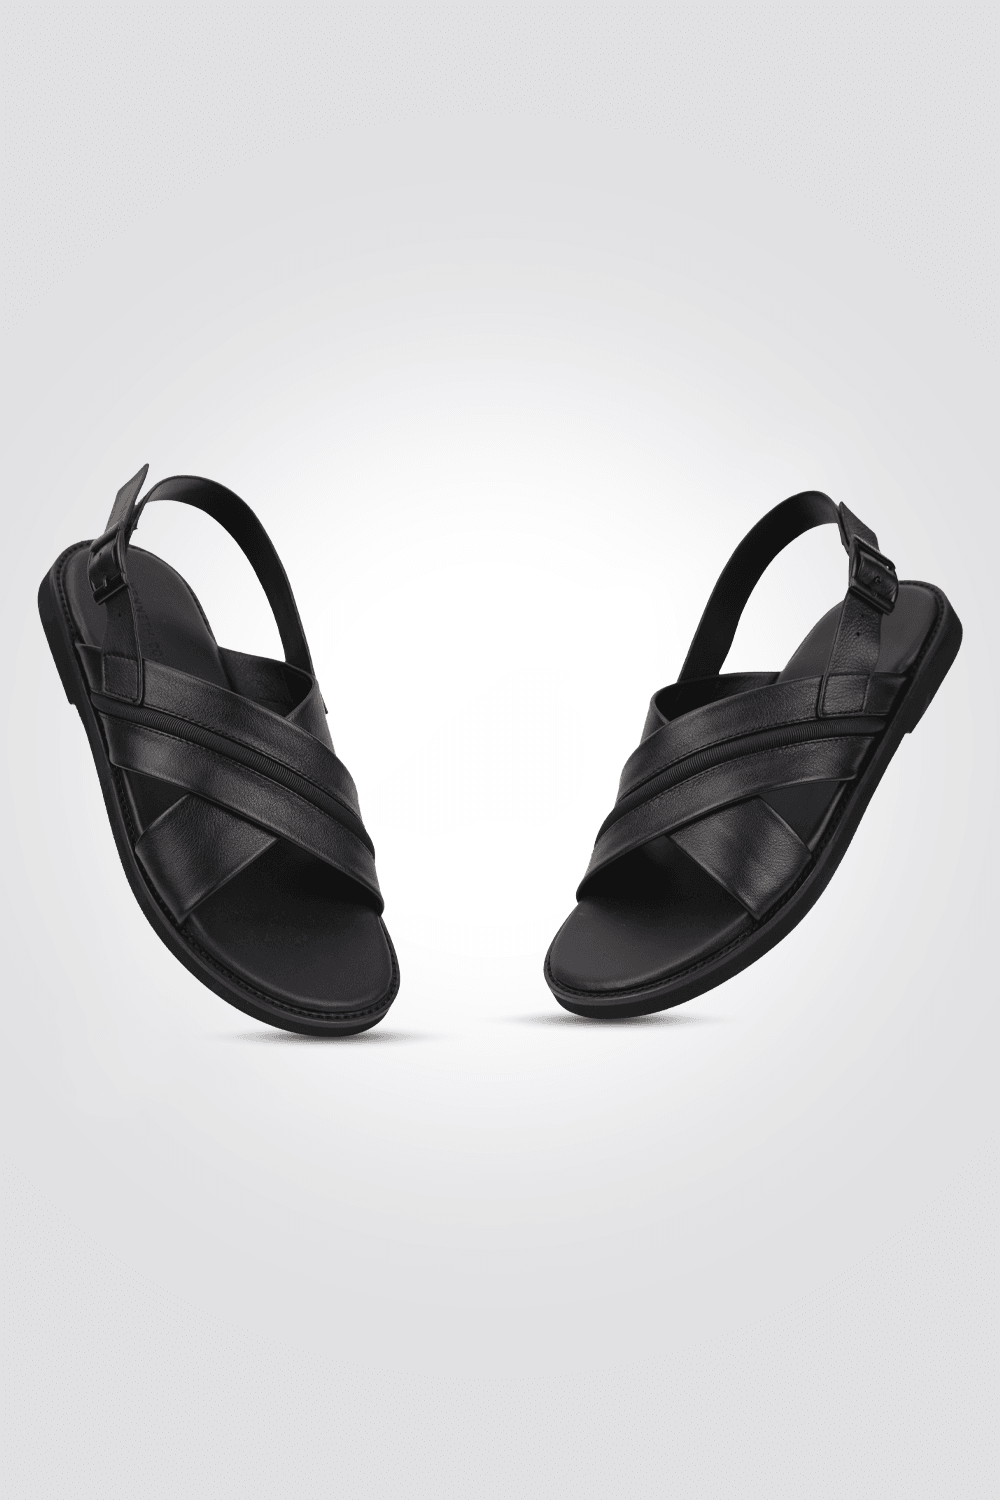 סנדלים מעור לגבר בצבע שחור - MASHBIR//365